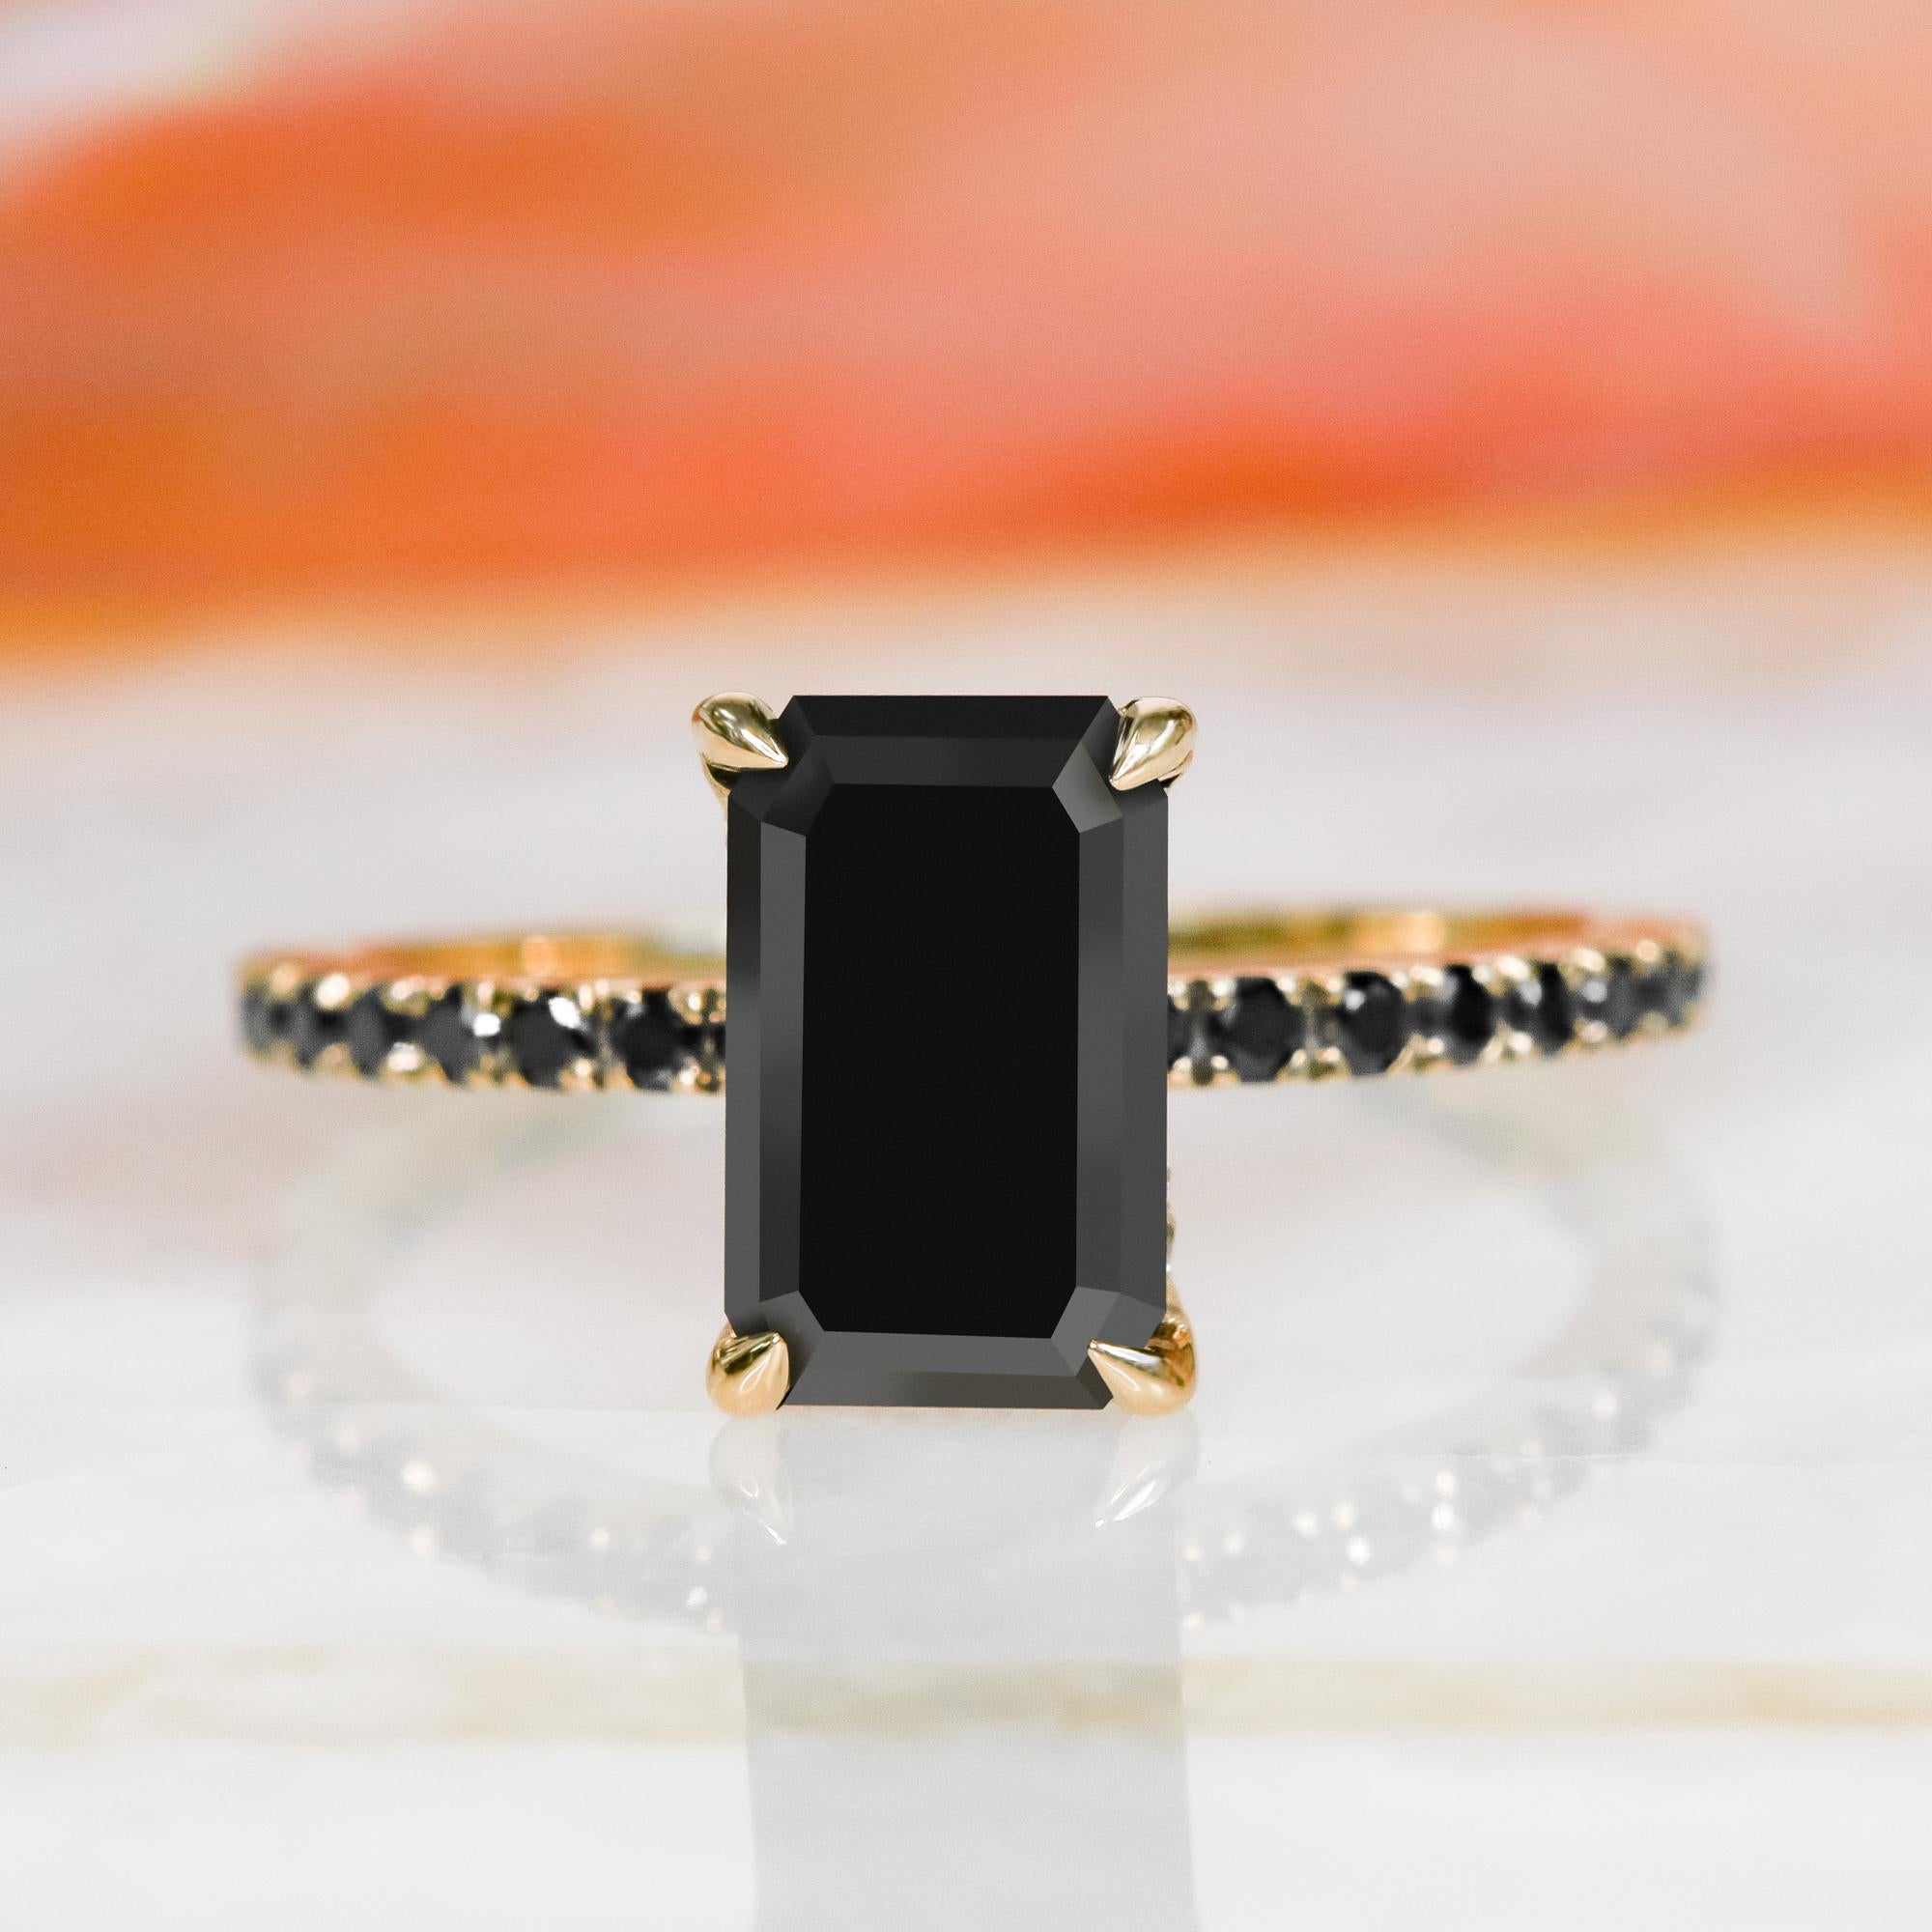 Unser erster Ring der Black Ice Collection zeigt einen natürlichen schwarzen Smaragddiamanten in einem einzigartigen Verlobungsring mit einem zarten, versteckten Halo mit weißen, natürlichen Diamanten als Akzent. 

Wir LIEBEN diesen Ring! Er ist der